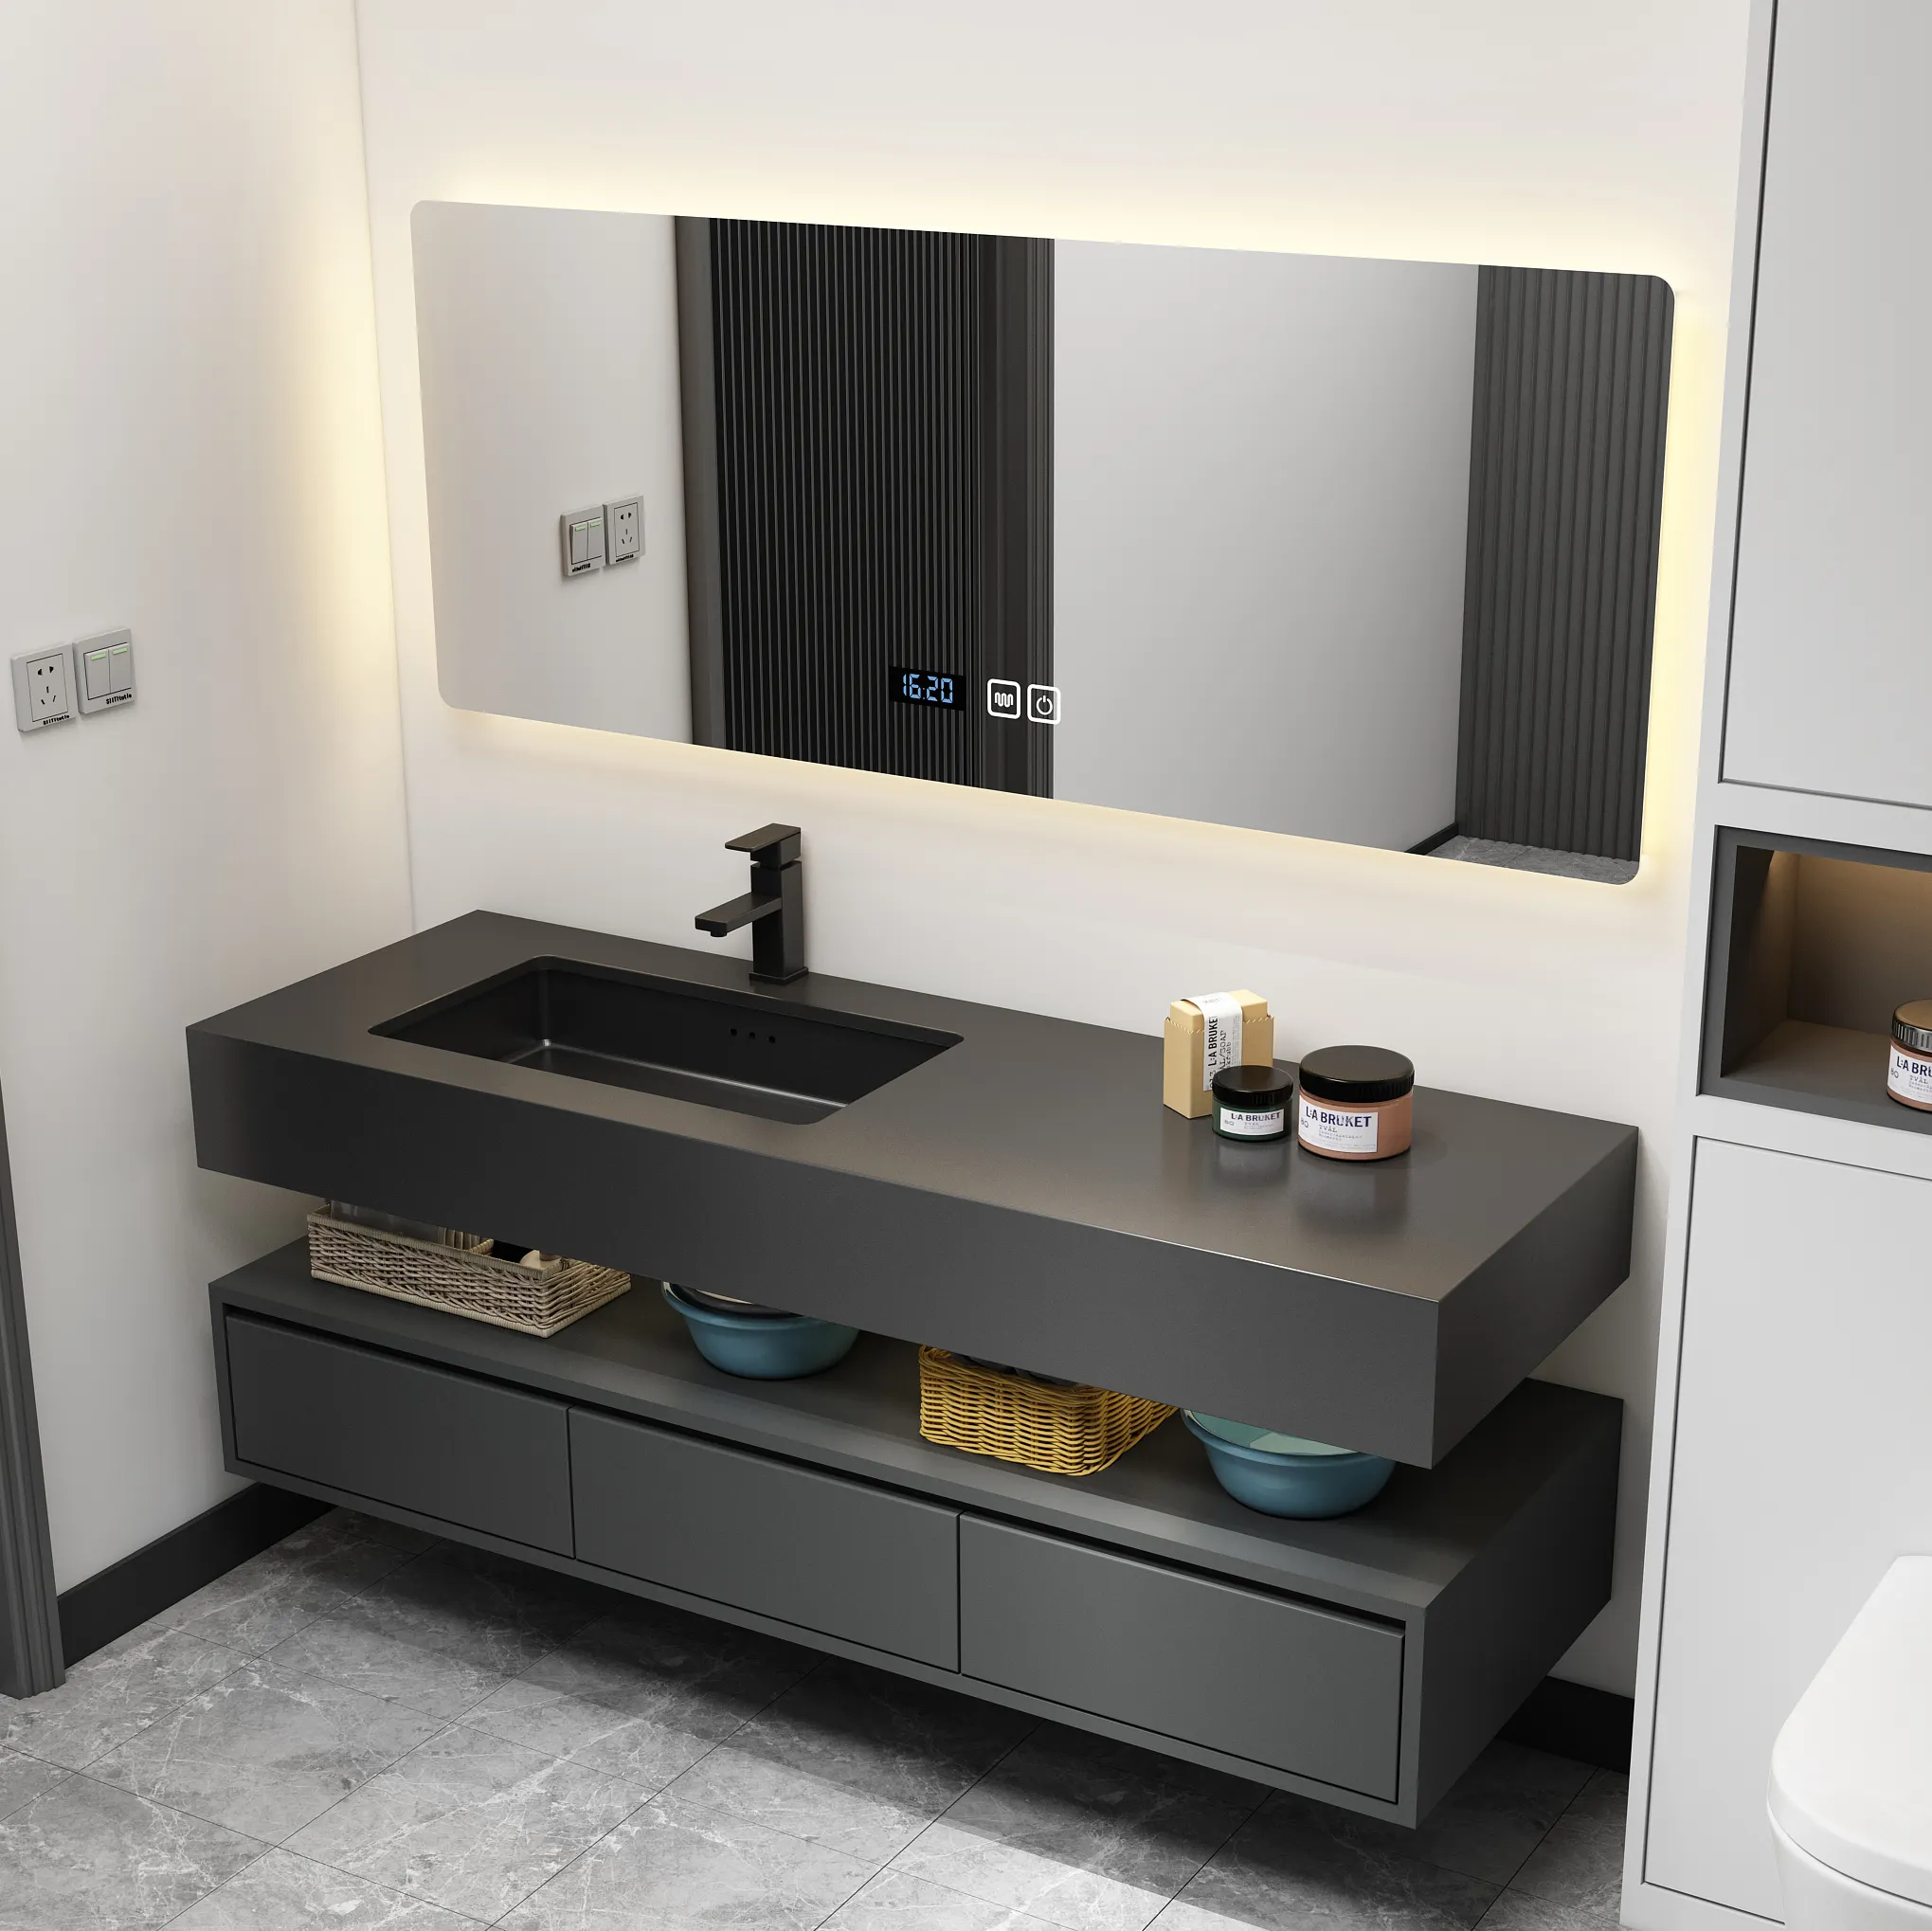 Luxury Floating Bathroom Vanity Supplier Mirror Cabinet Modern Matte Black Wall Mounted Bathroom Vanity Set